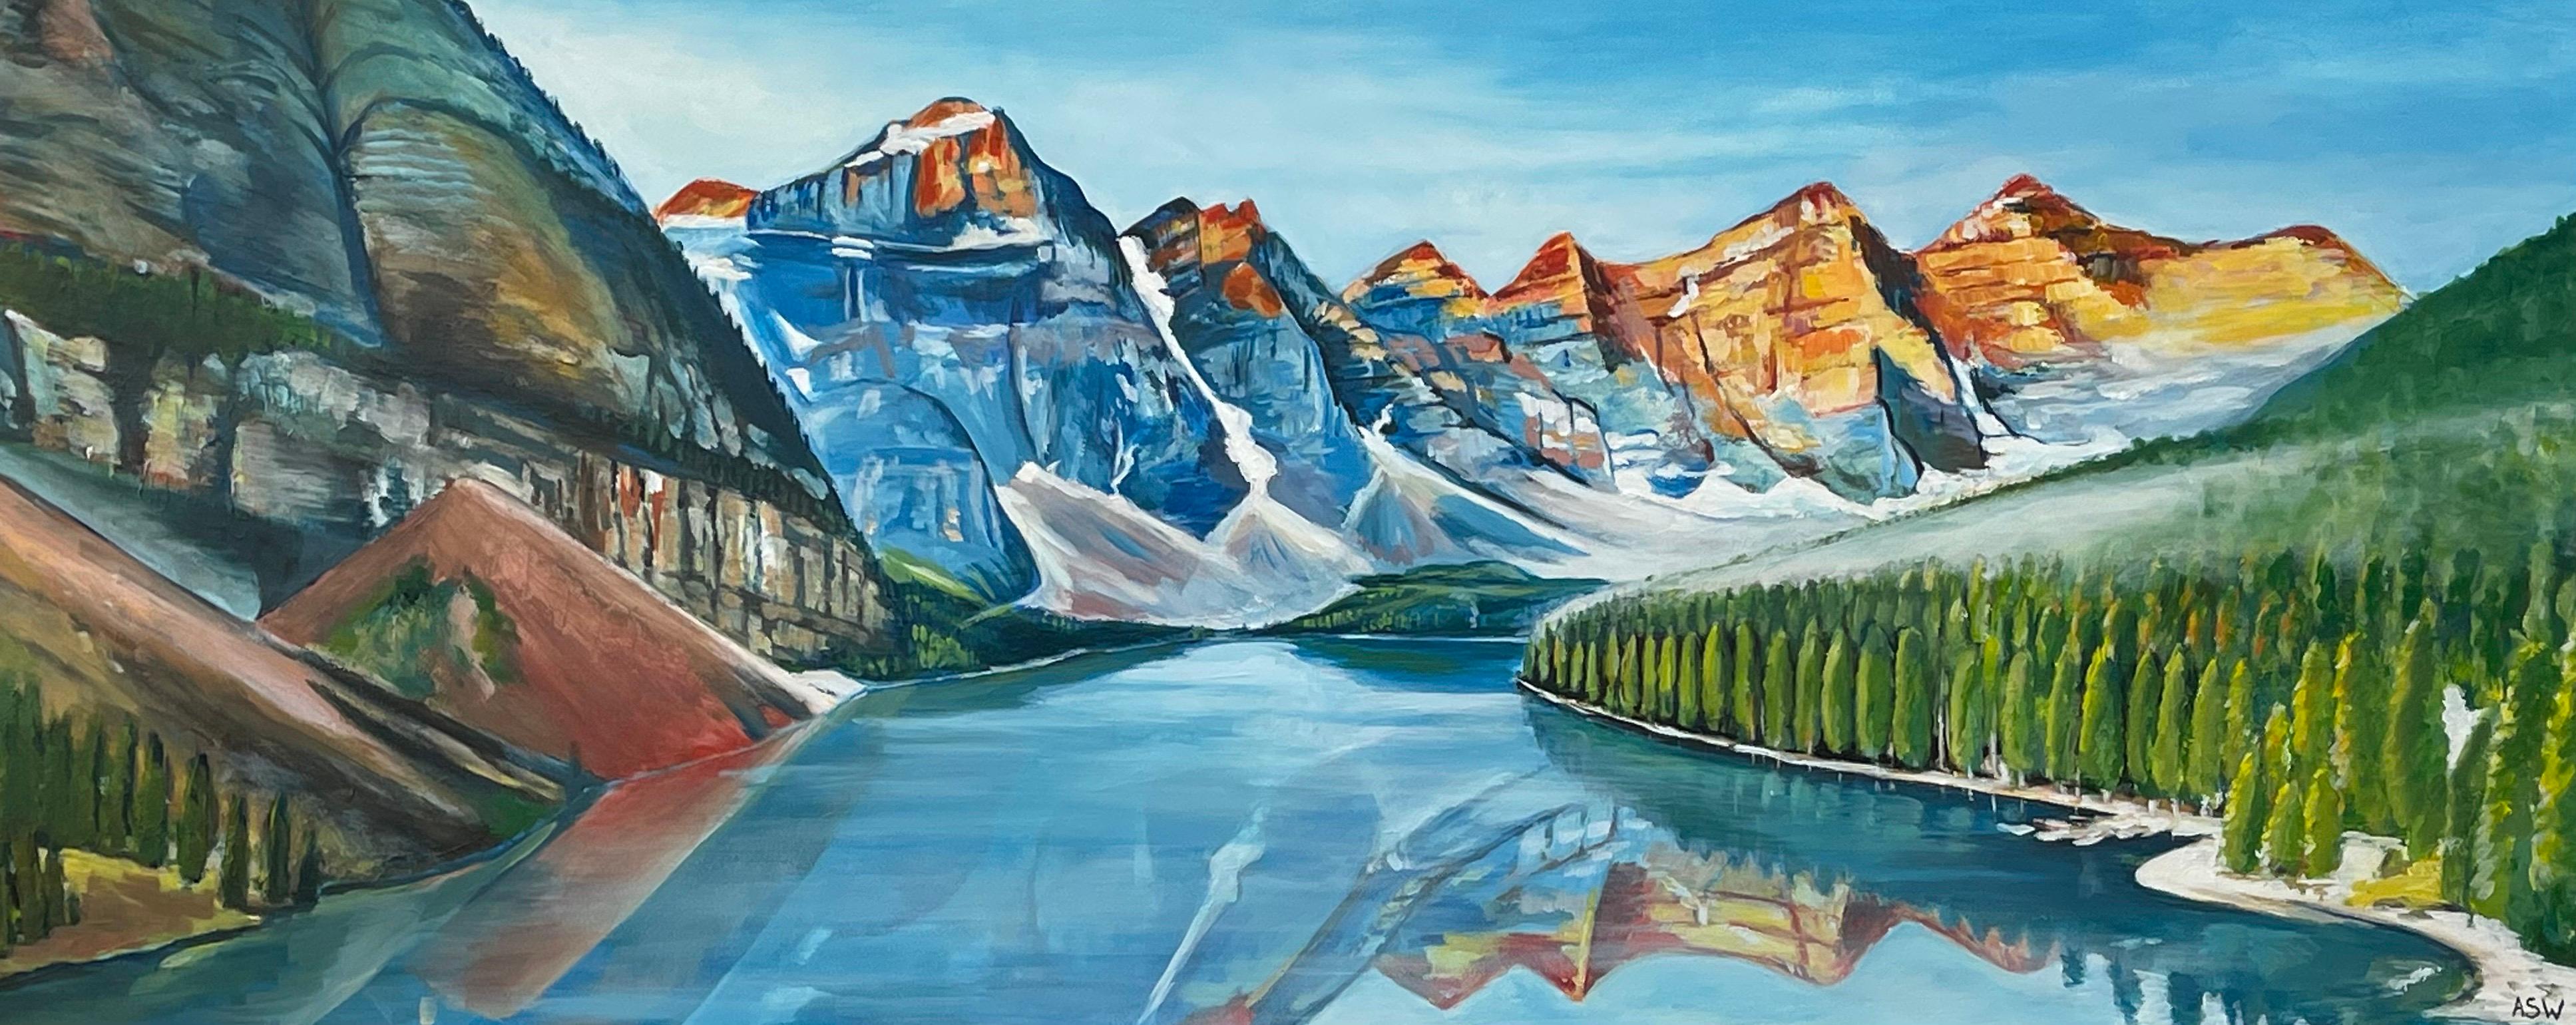 Modernes Landschaftsgemälde von Lake Moraine in Lake Alberta Kanada von zeitgenössischem Künstler

Kunst misst 40 x 20 Zoll
Der Rahmen misst 46 x 26 Zoll (gerahmt in einer hochwertigen modernen weißen Leiste) 

Angela Wakefield war zweimal auf dem